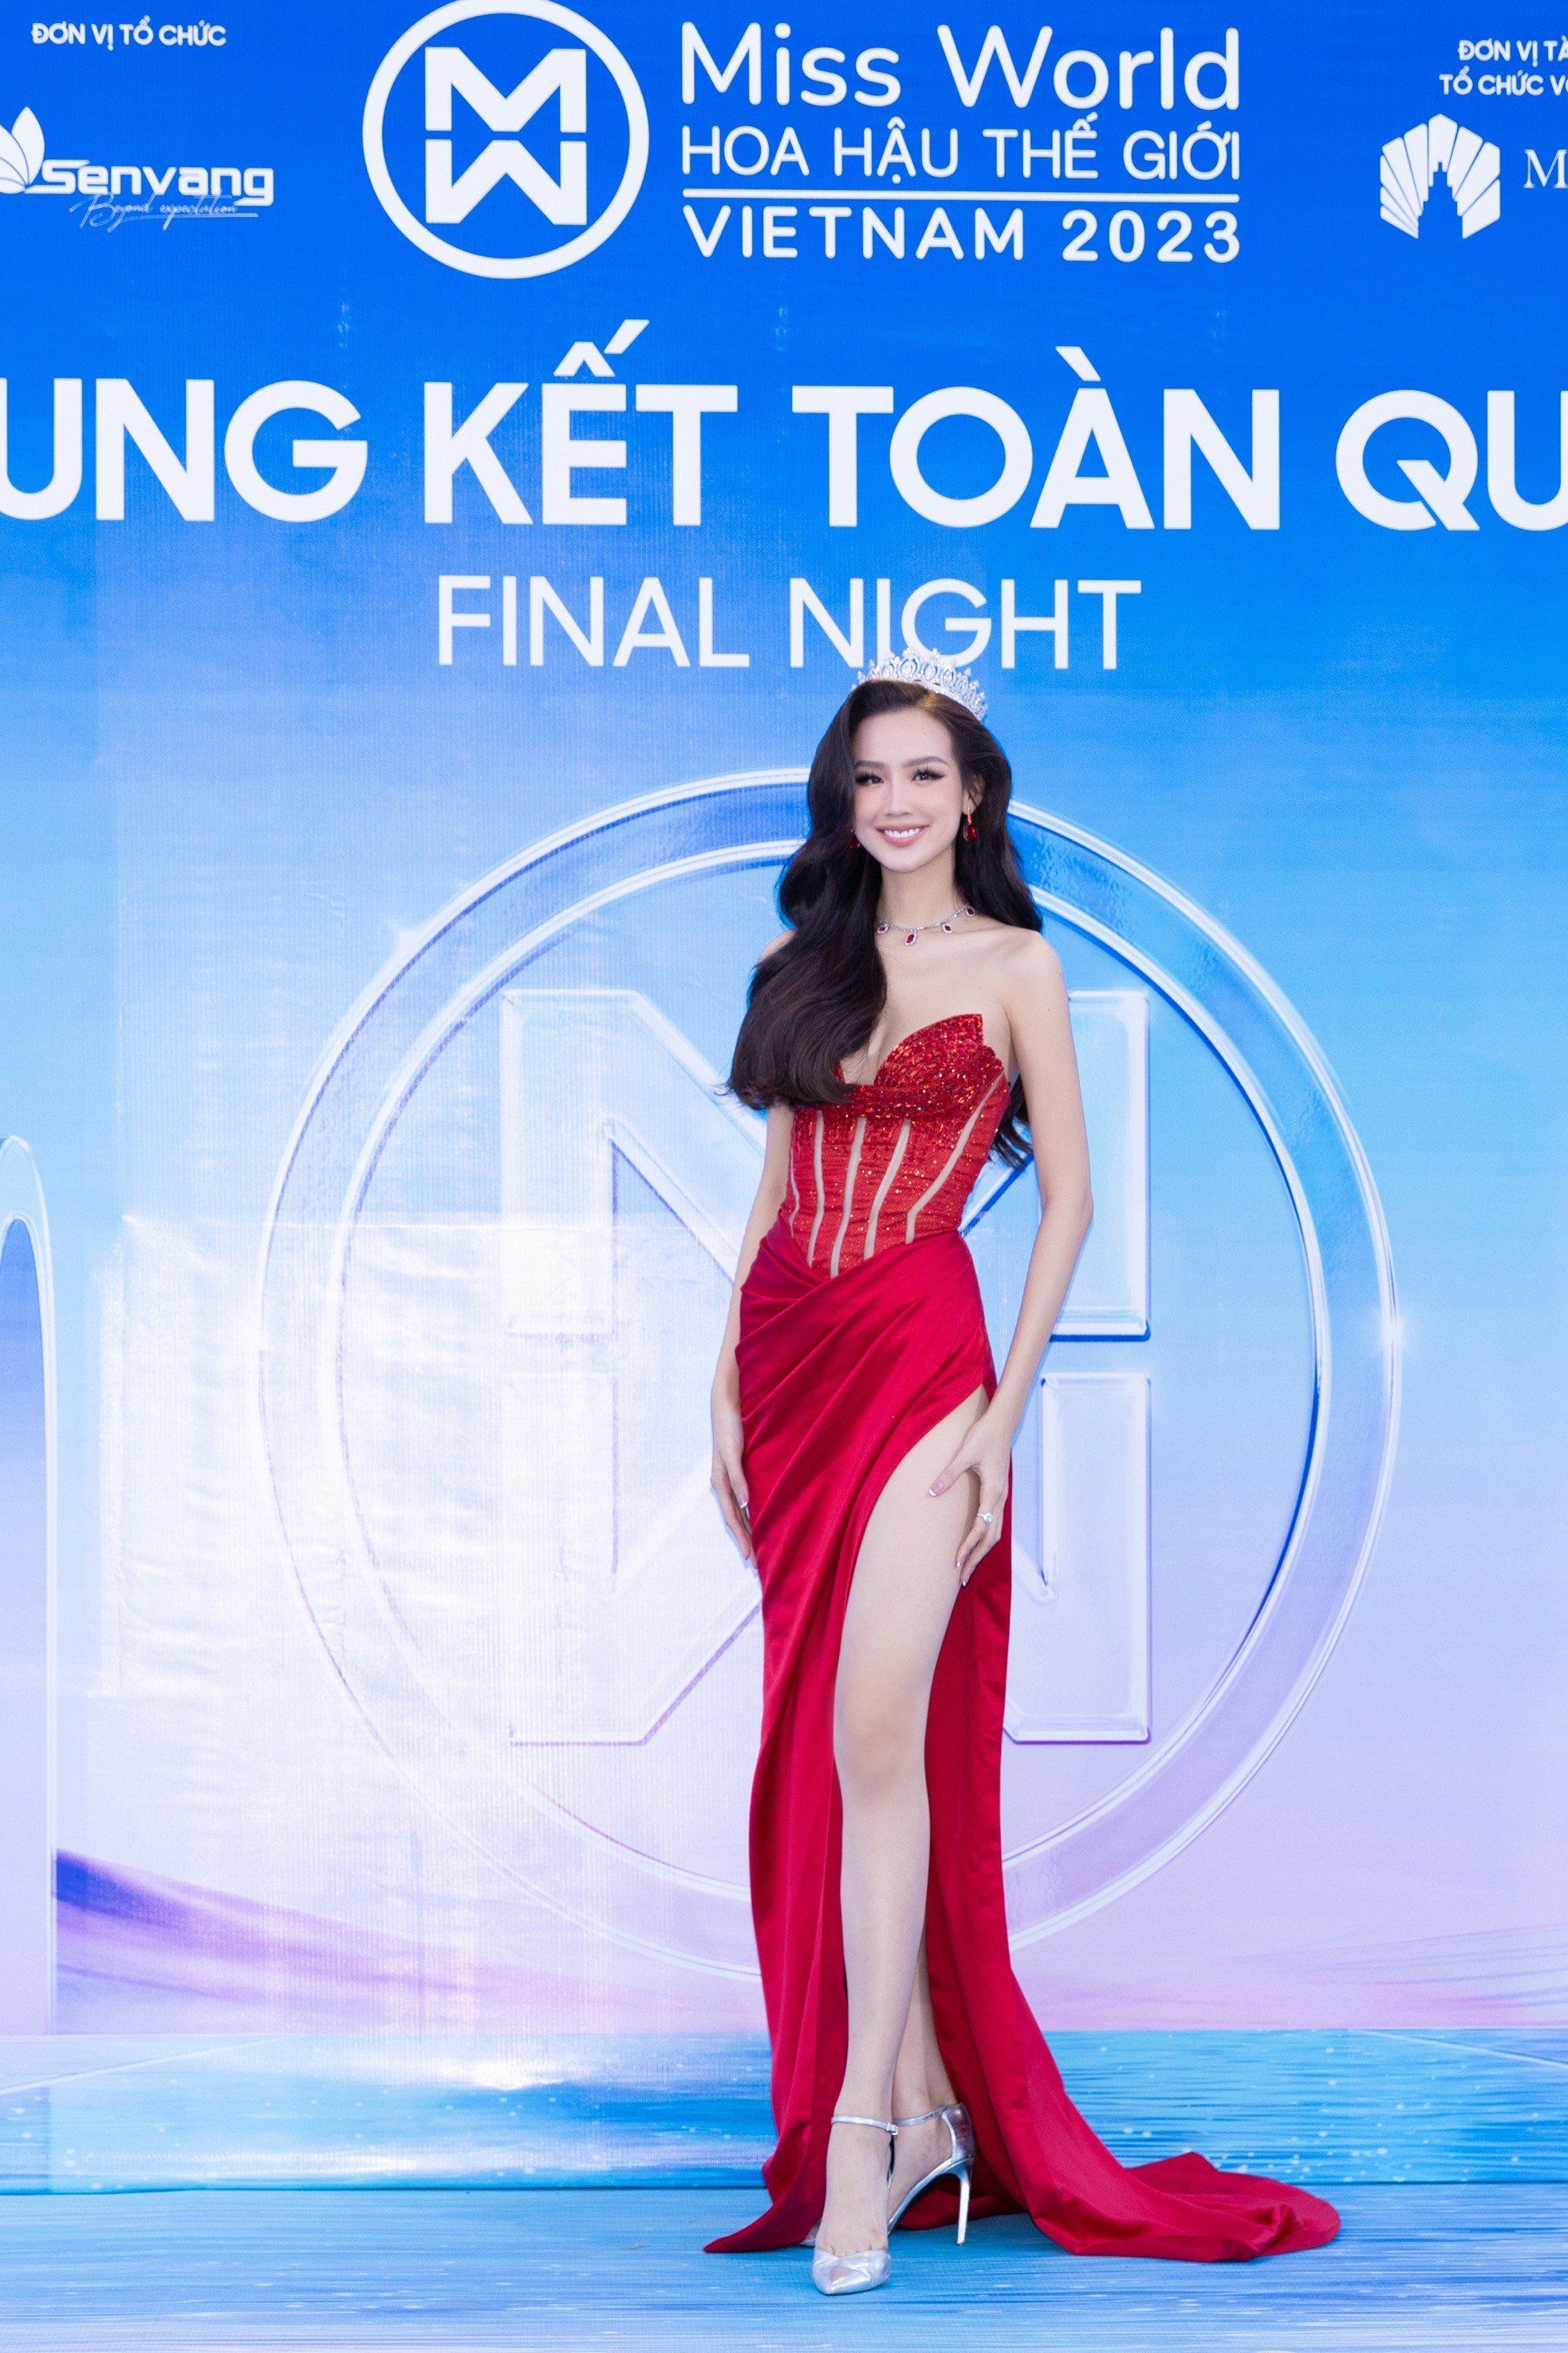 Hot: Cô gái Bình Định giành vương miện Miss World Việt Nam 2023 - 37